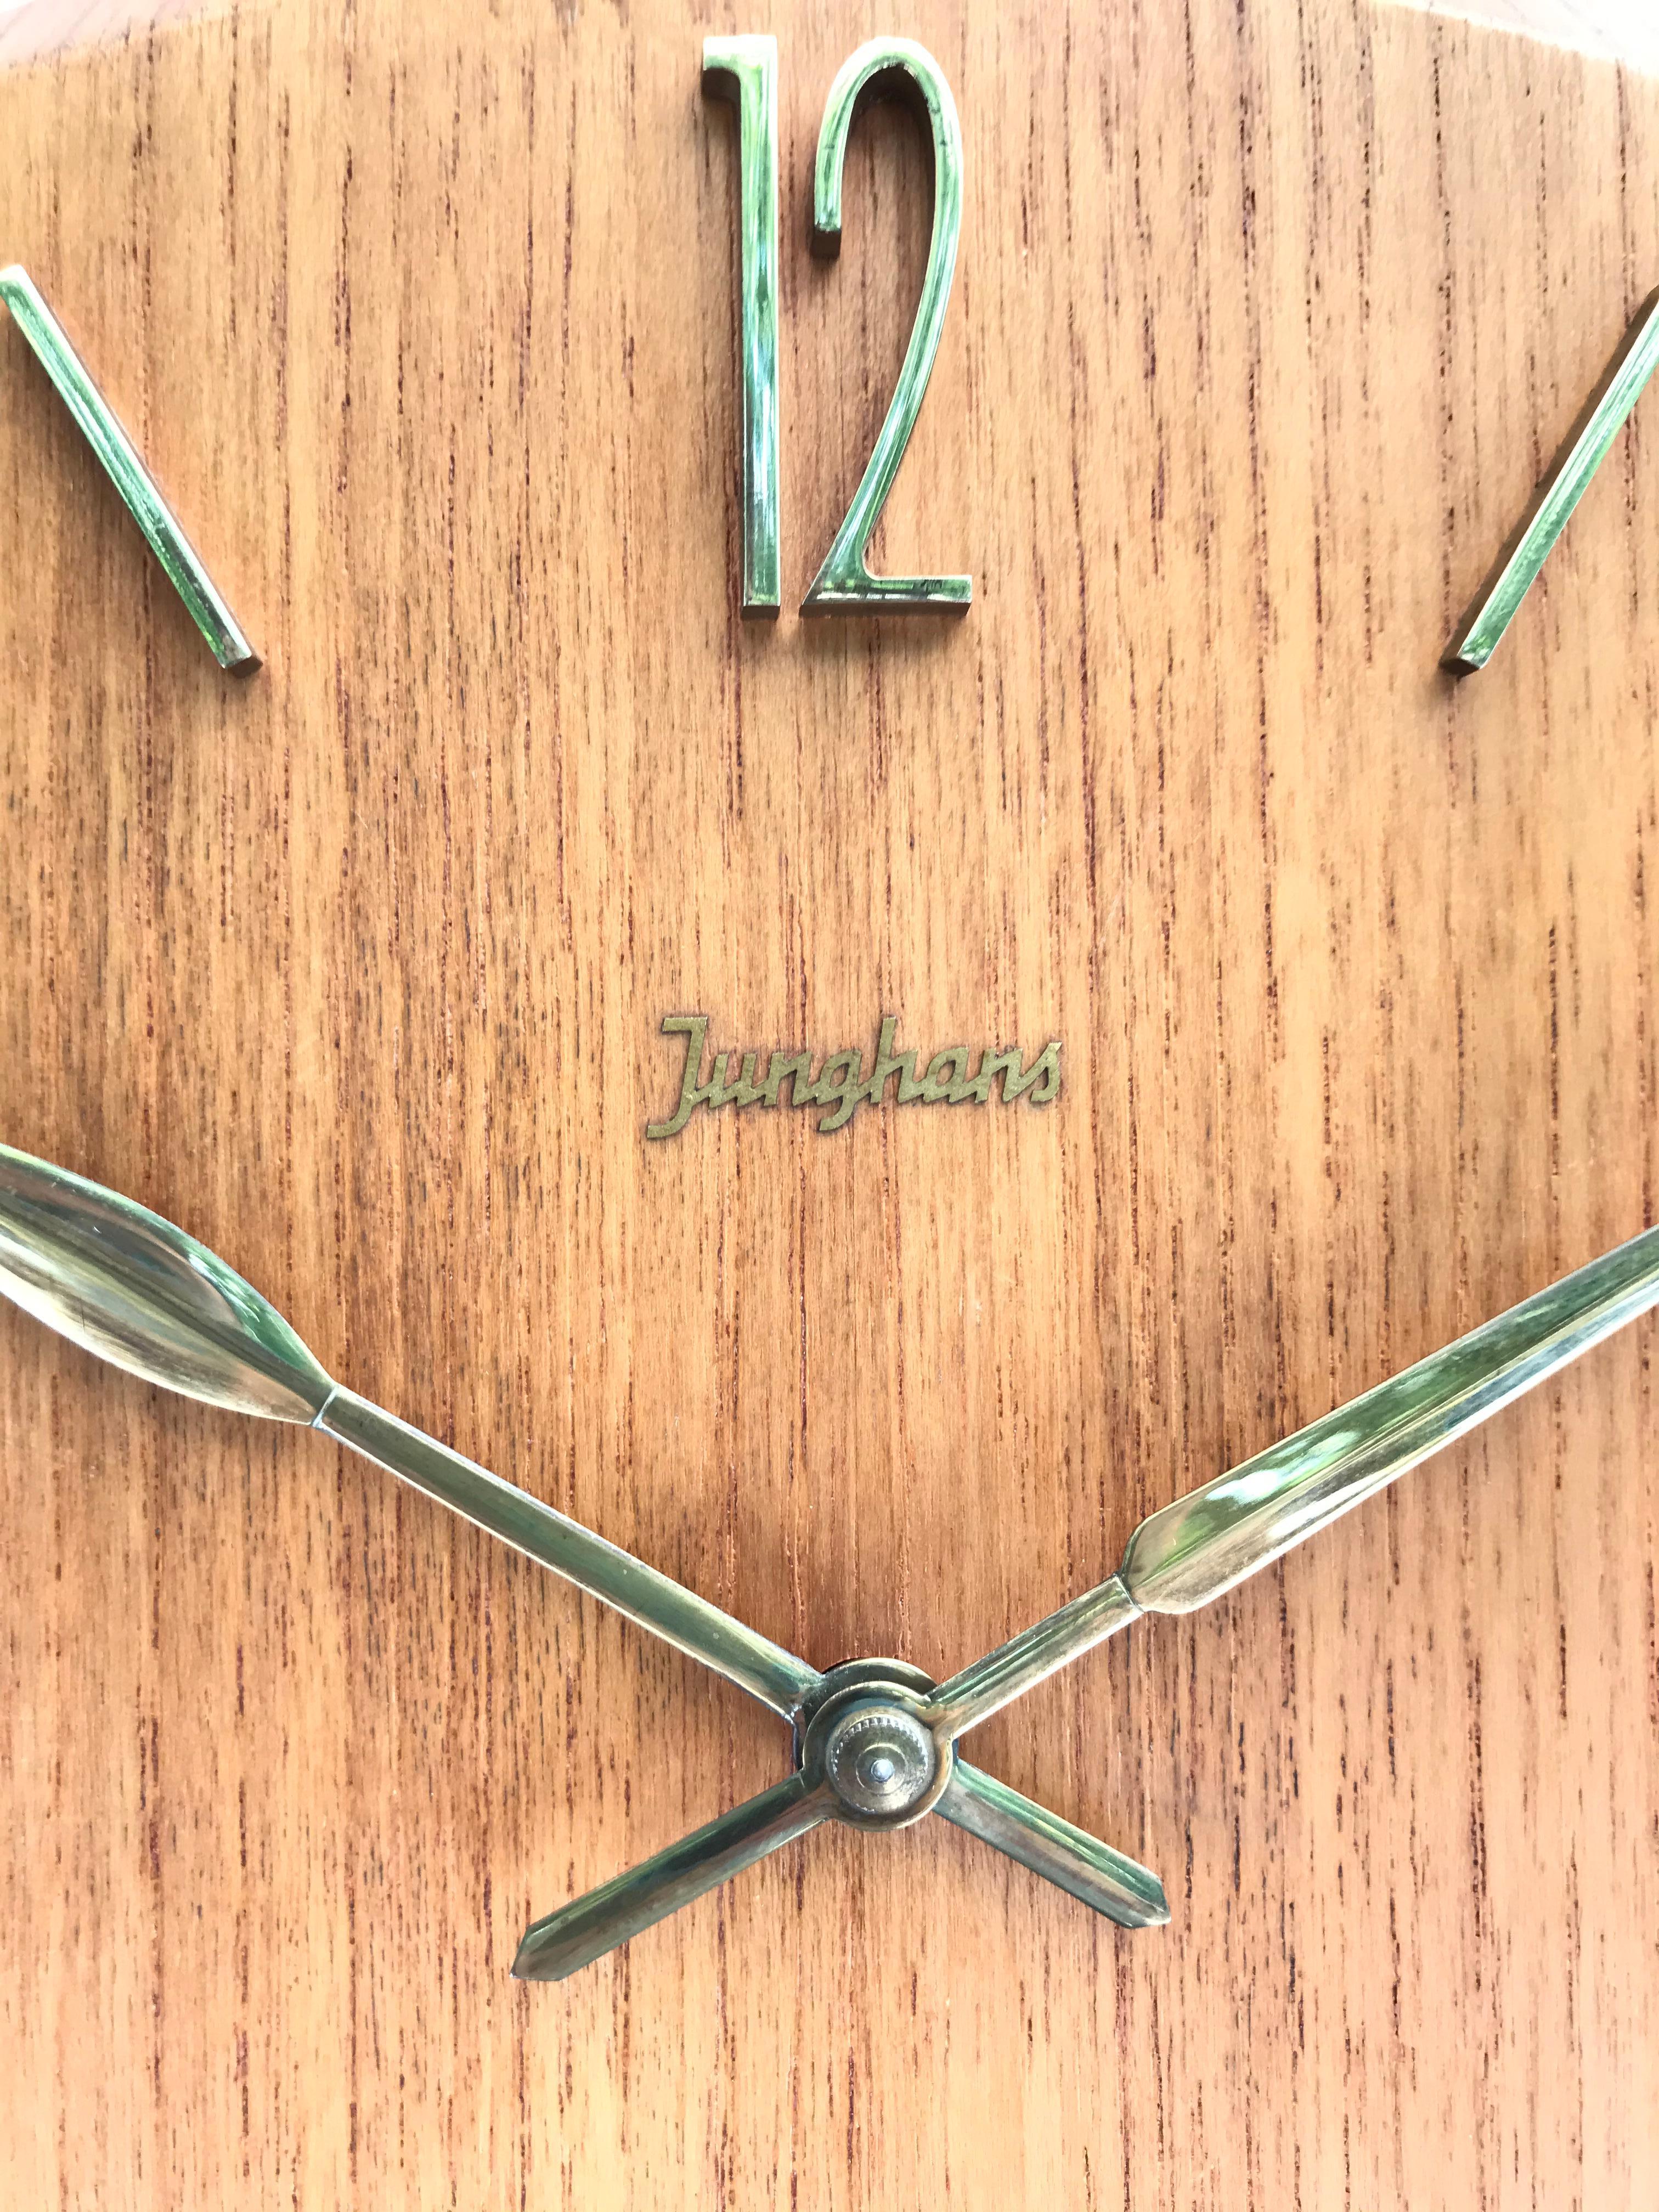 junghans pendulum clock